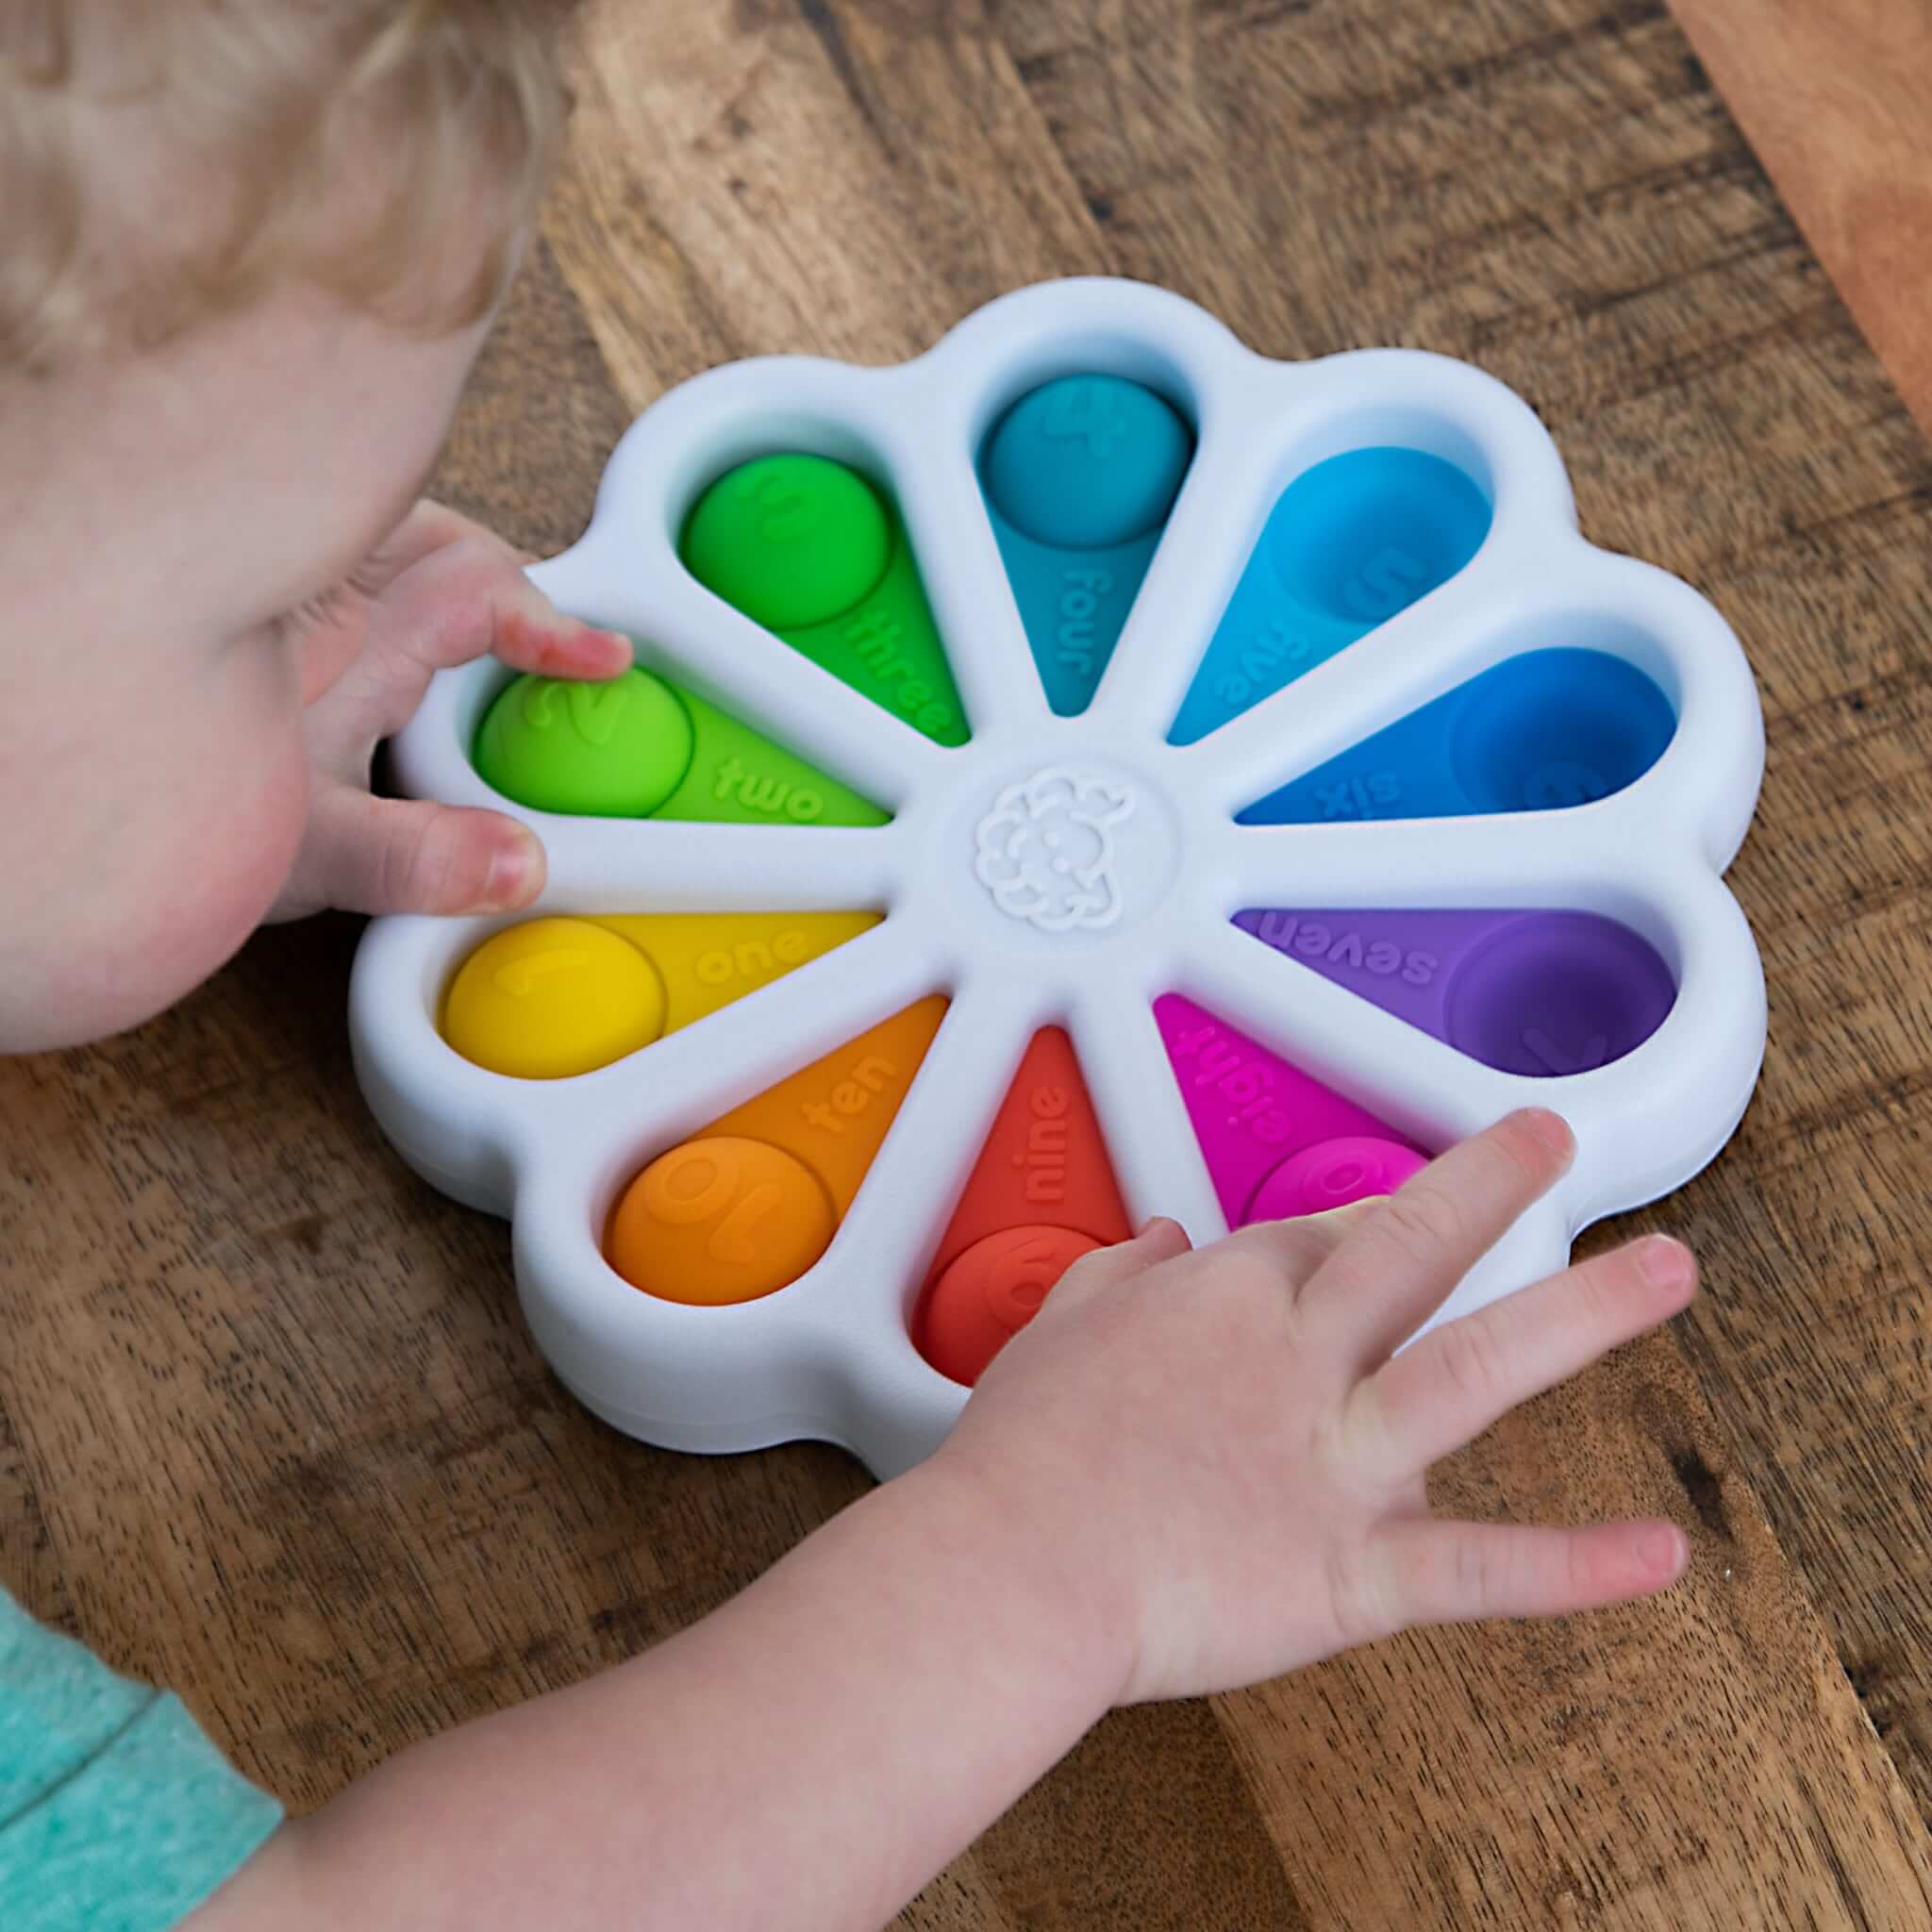 Zabawki dla dzieci firmy Fat Brain Toys powstają z myślą o rozwoju dziecka. Są to zabawki sensoryczne, które mają na celu nauczyć malucha kreatywności oraz wesprzeć prawidłowy rozwój małej motoryki i zdolności manualnych.